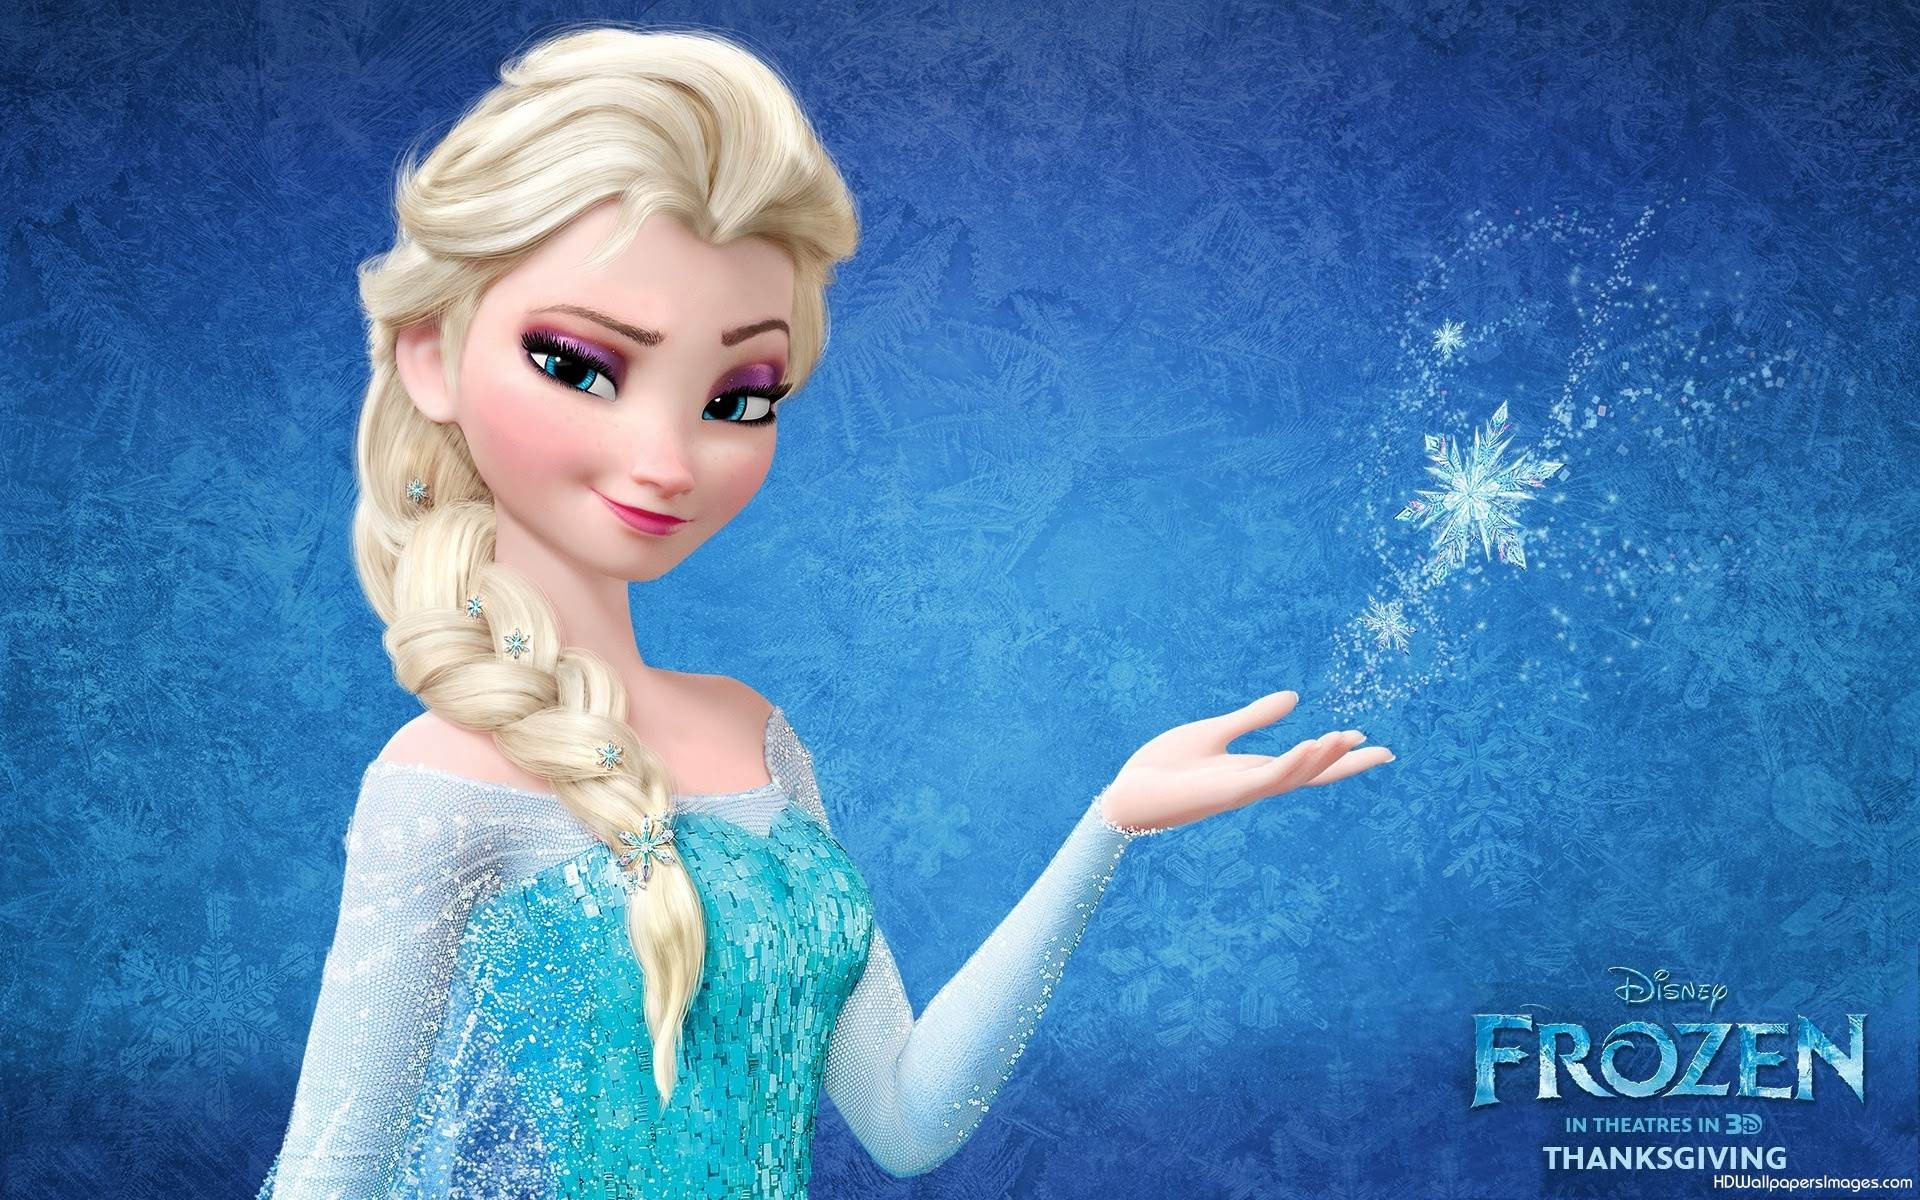 Elsa with sparkle - Elsa the Snow Queen Photo (37331469) - Fanpop